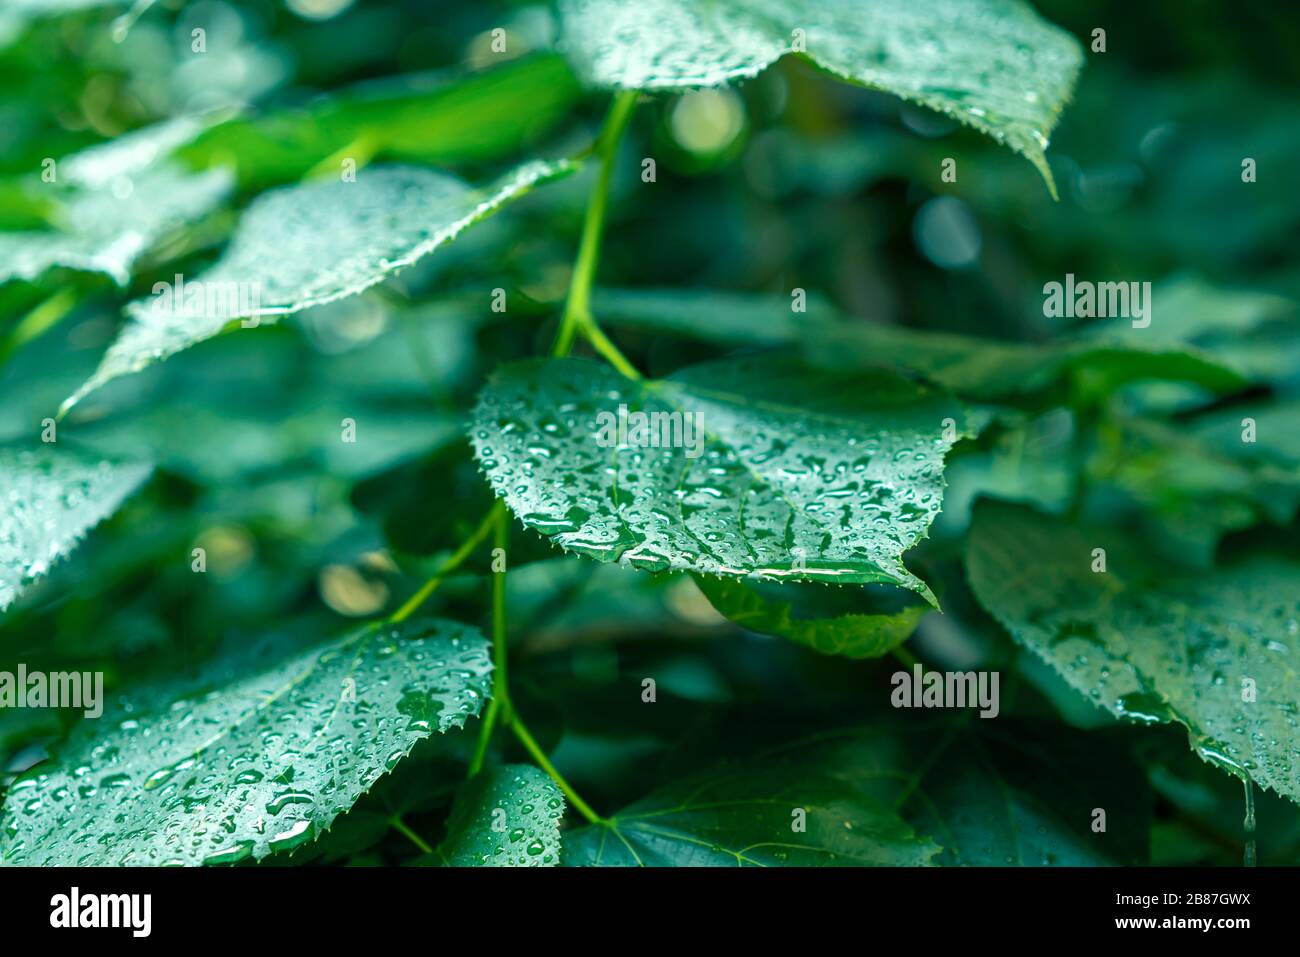 Primo piano di foglie verdi bagnate dopo una pioggia estiva. Concetto di purezza, calma e relax. Foto Stock